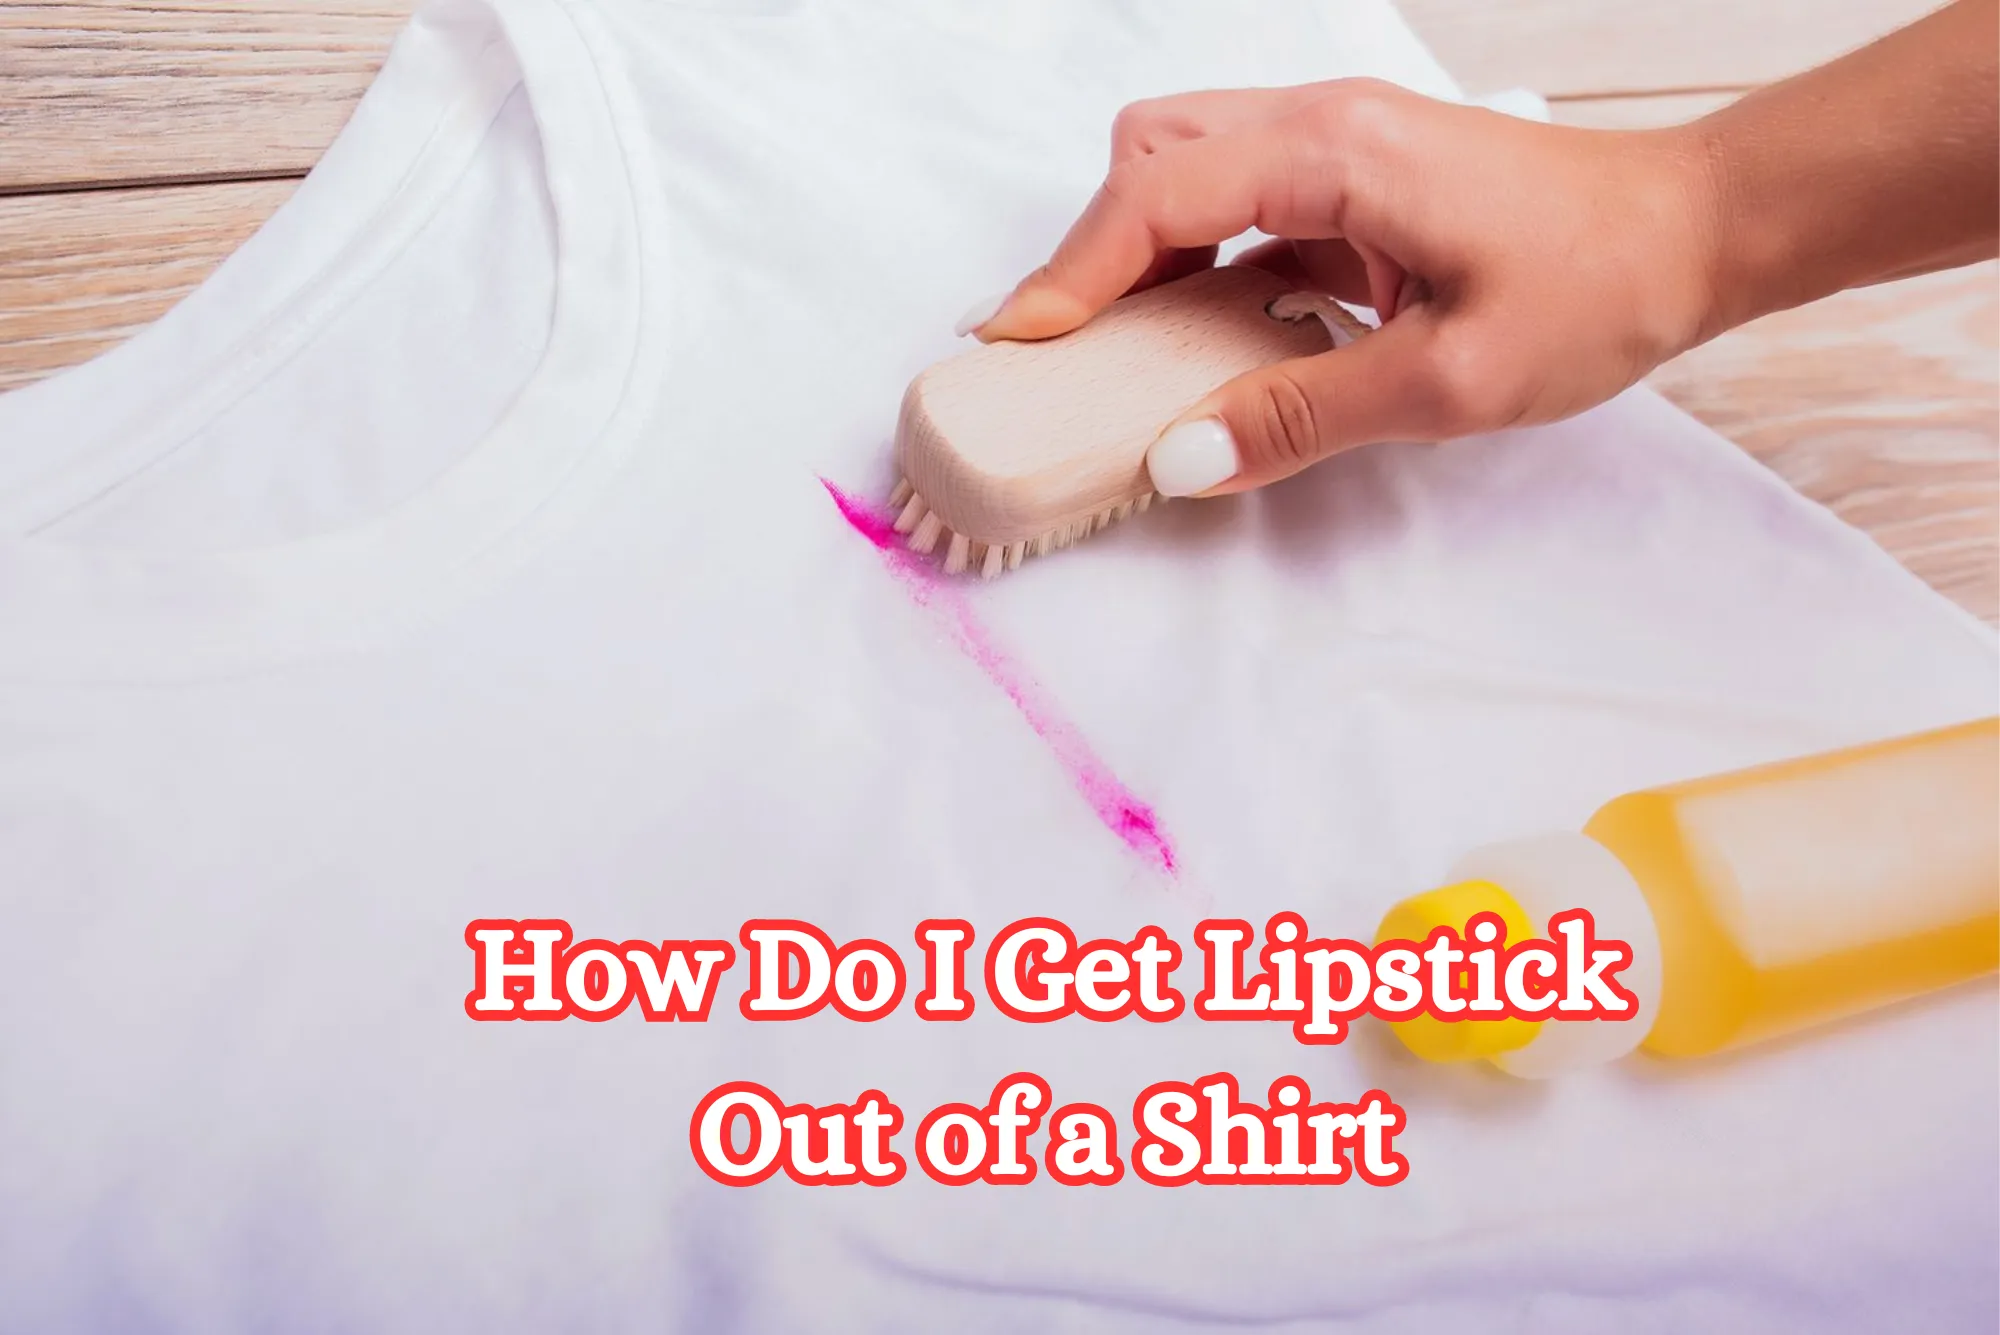 How Do I Get Lipstick Out of a Shirt